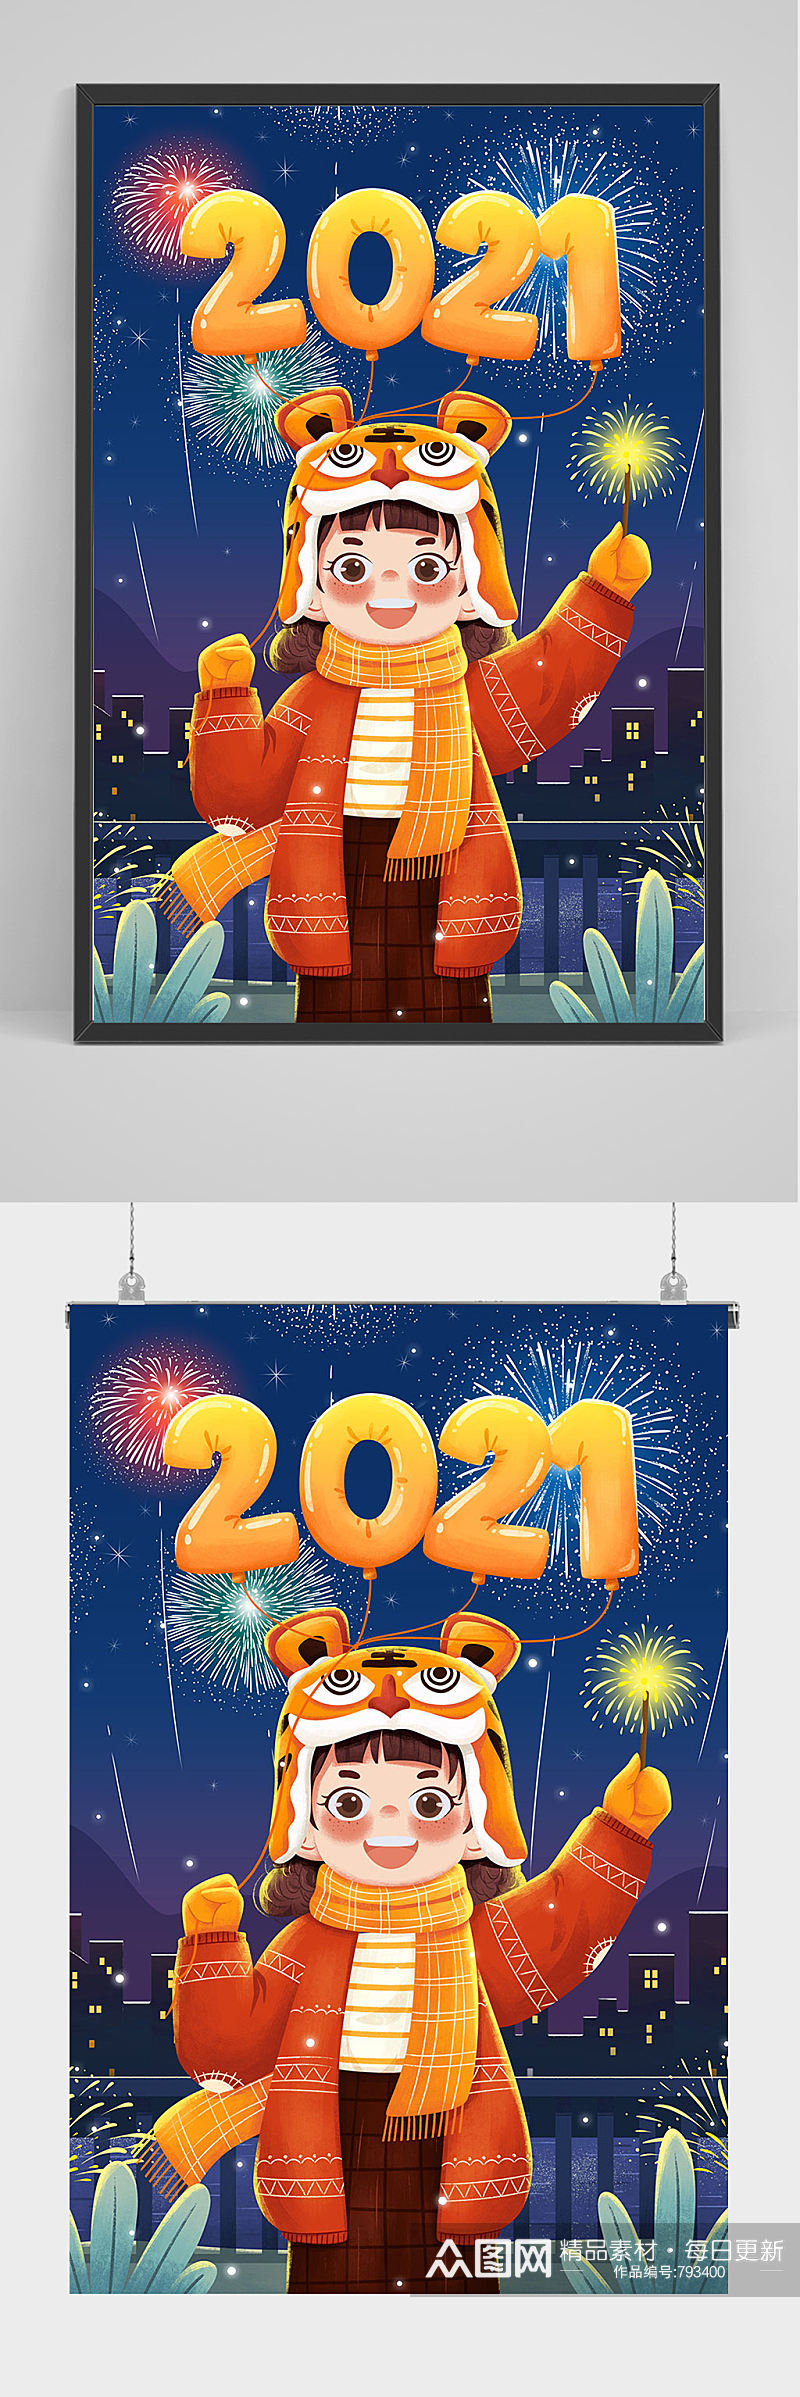 2021年新年手绘插画设计素材